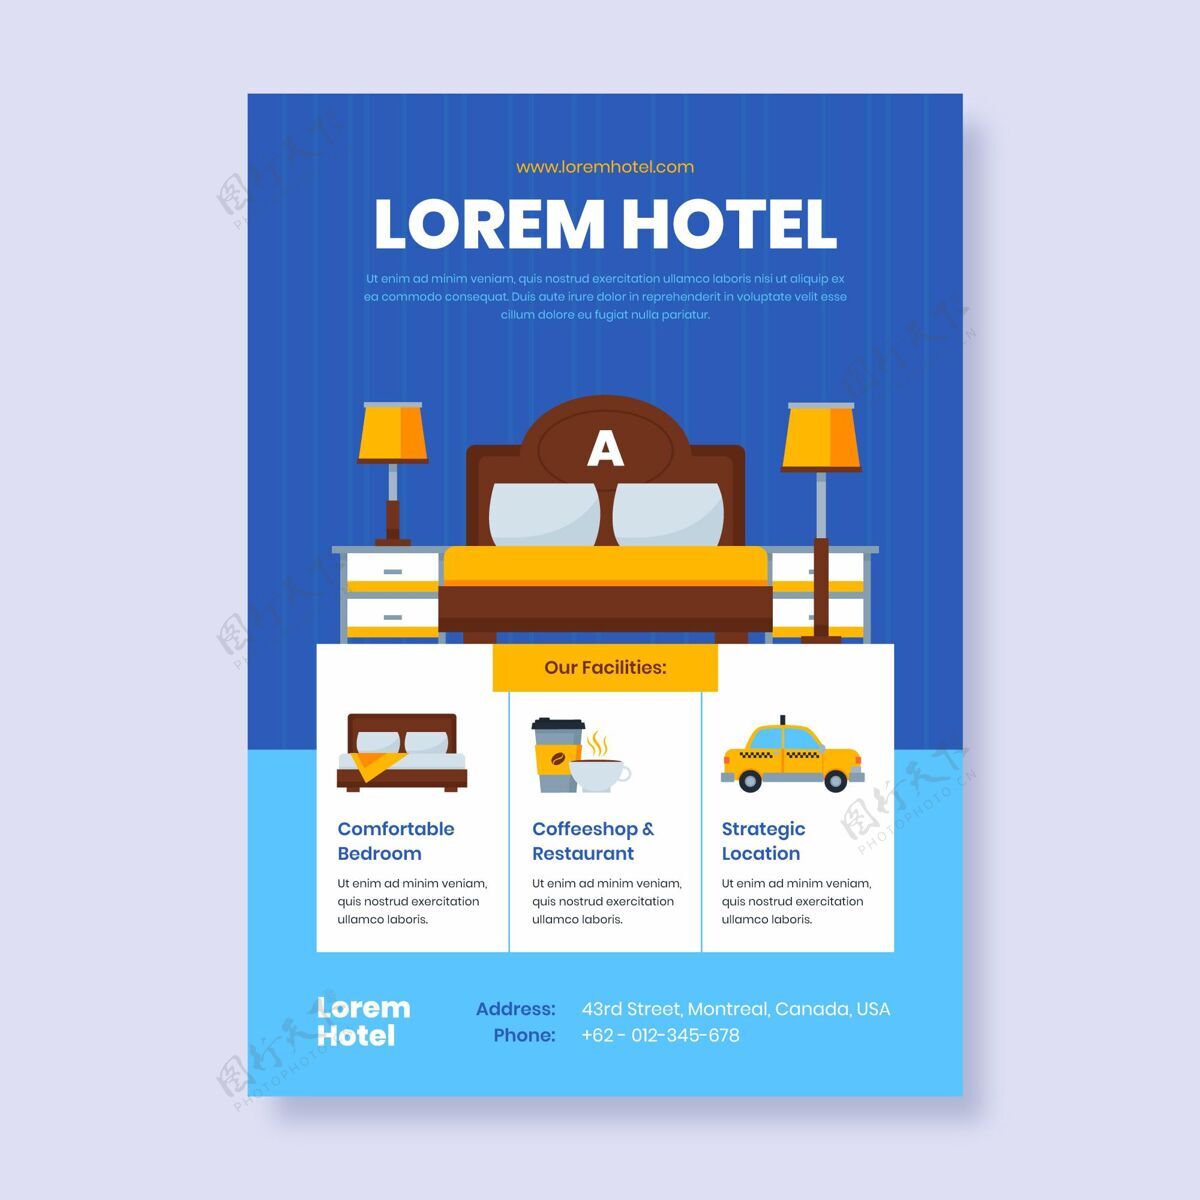 度假村平面设计酒店信息传单模板室内信息旅游